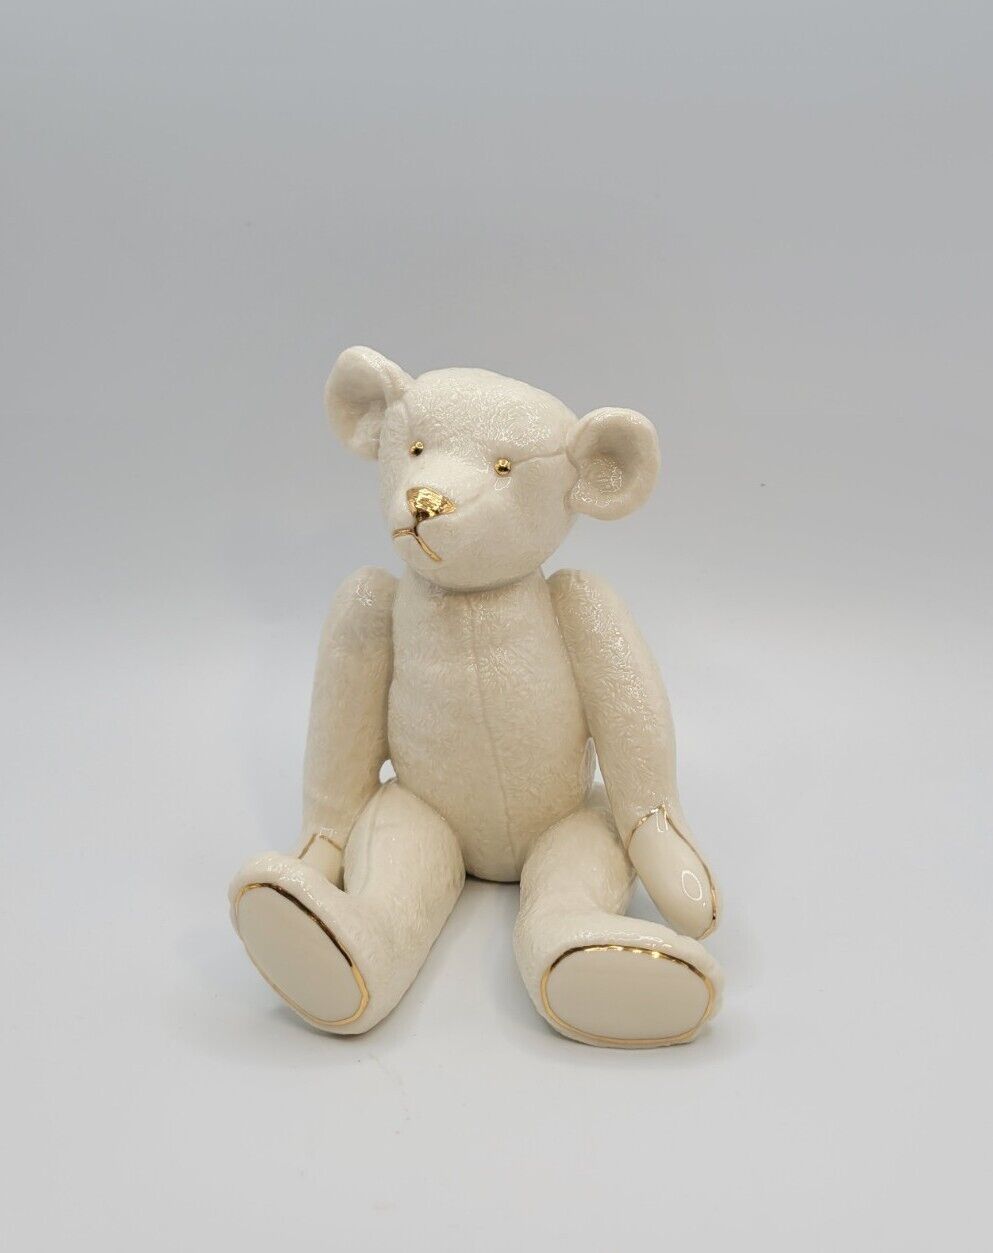 Lenox Smithsonian Institution Centennial Porcelain Teddy Bear Figurine Vtg 